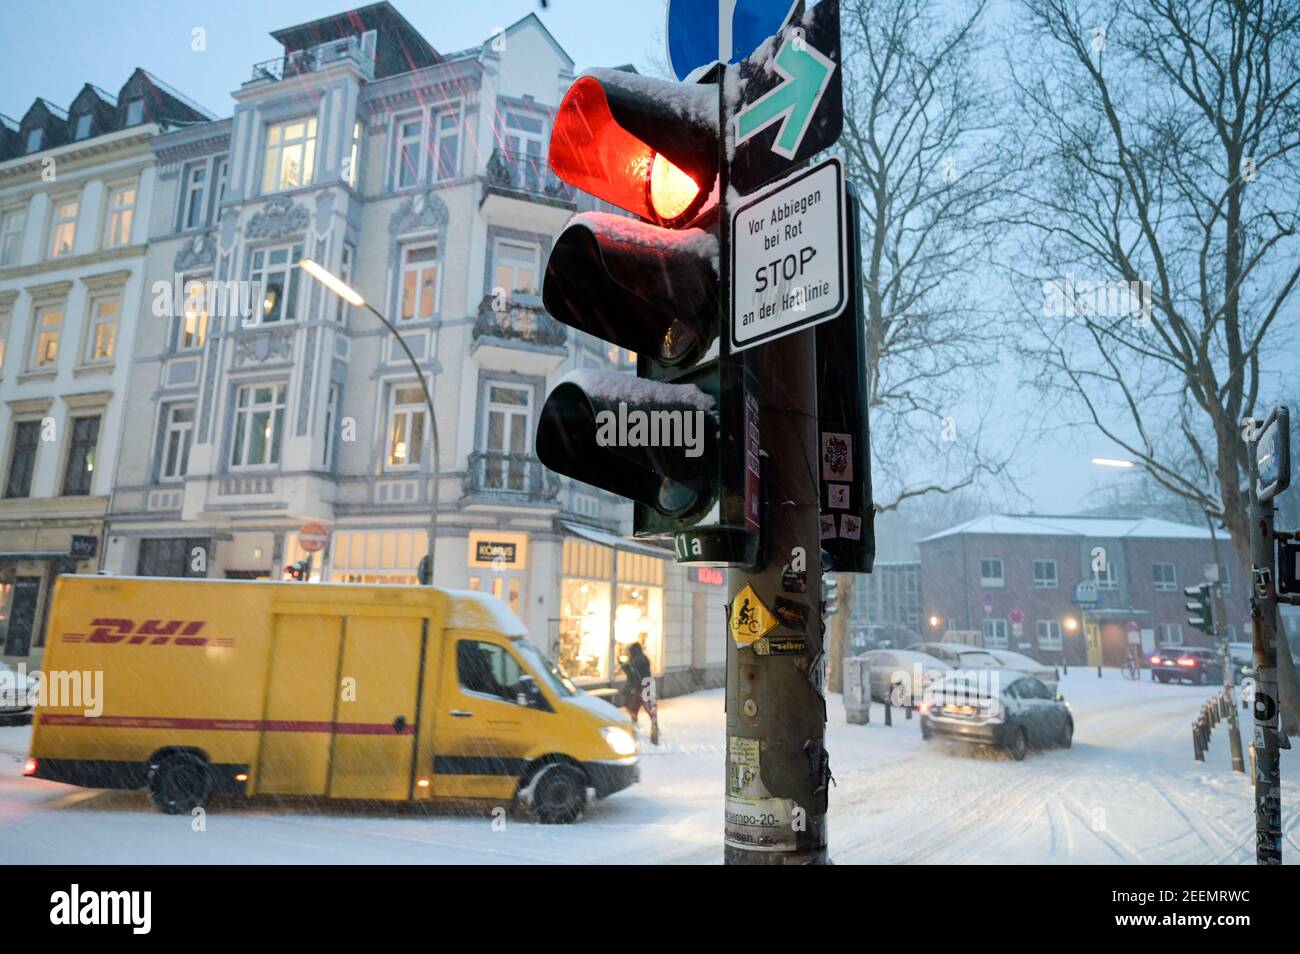 ALLEMAGNE, Hambourg, hiver, neige, feu rouge, véhicule jaune DHL, service de livraison de colis Banque D'Images